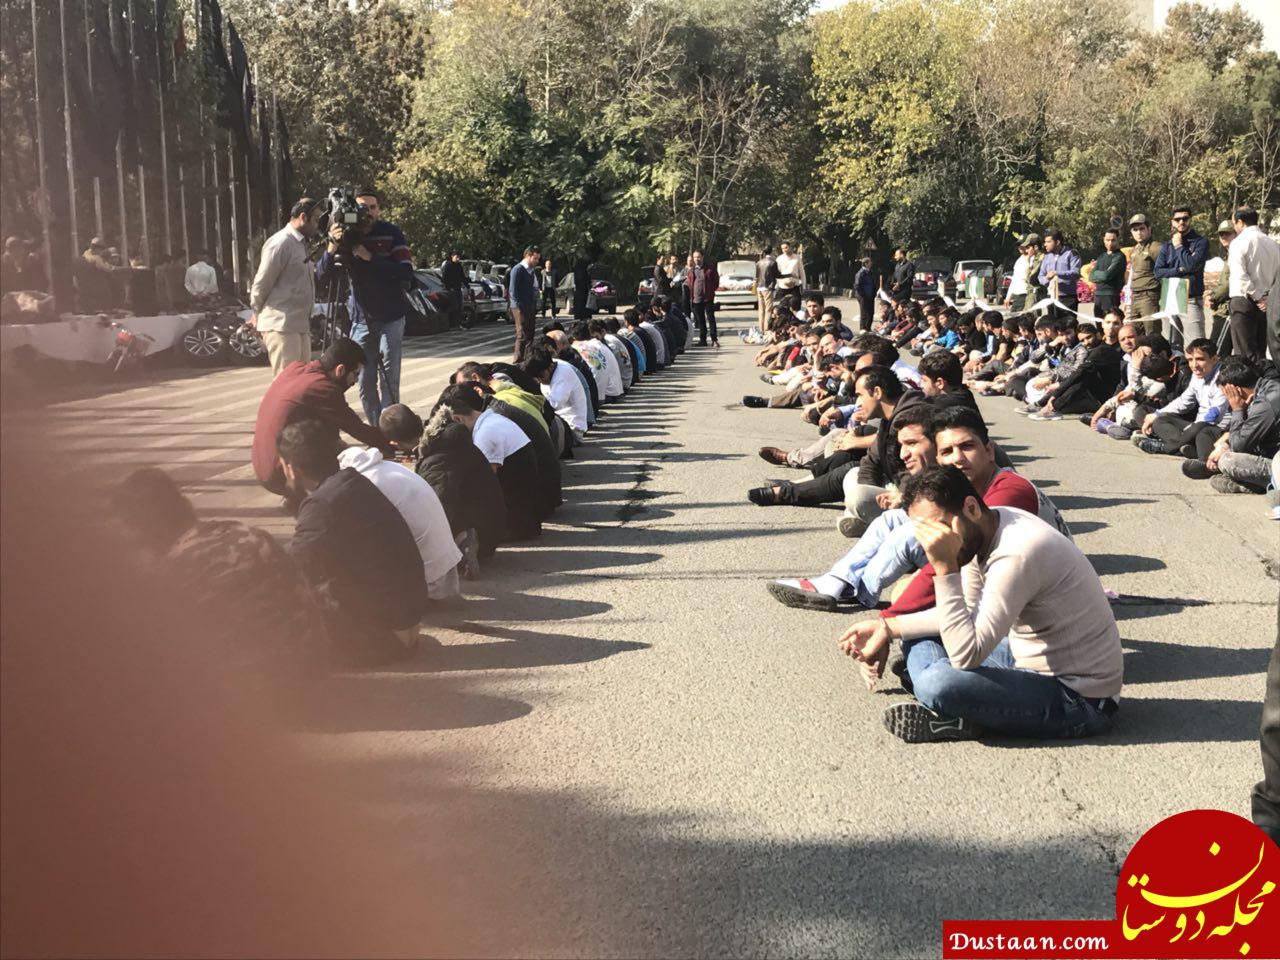 110 سارق خشن در پایتخت دستگیر شدند +تصاویر